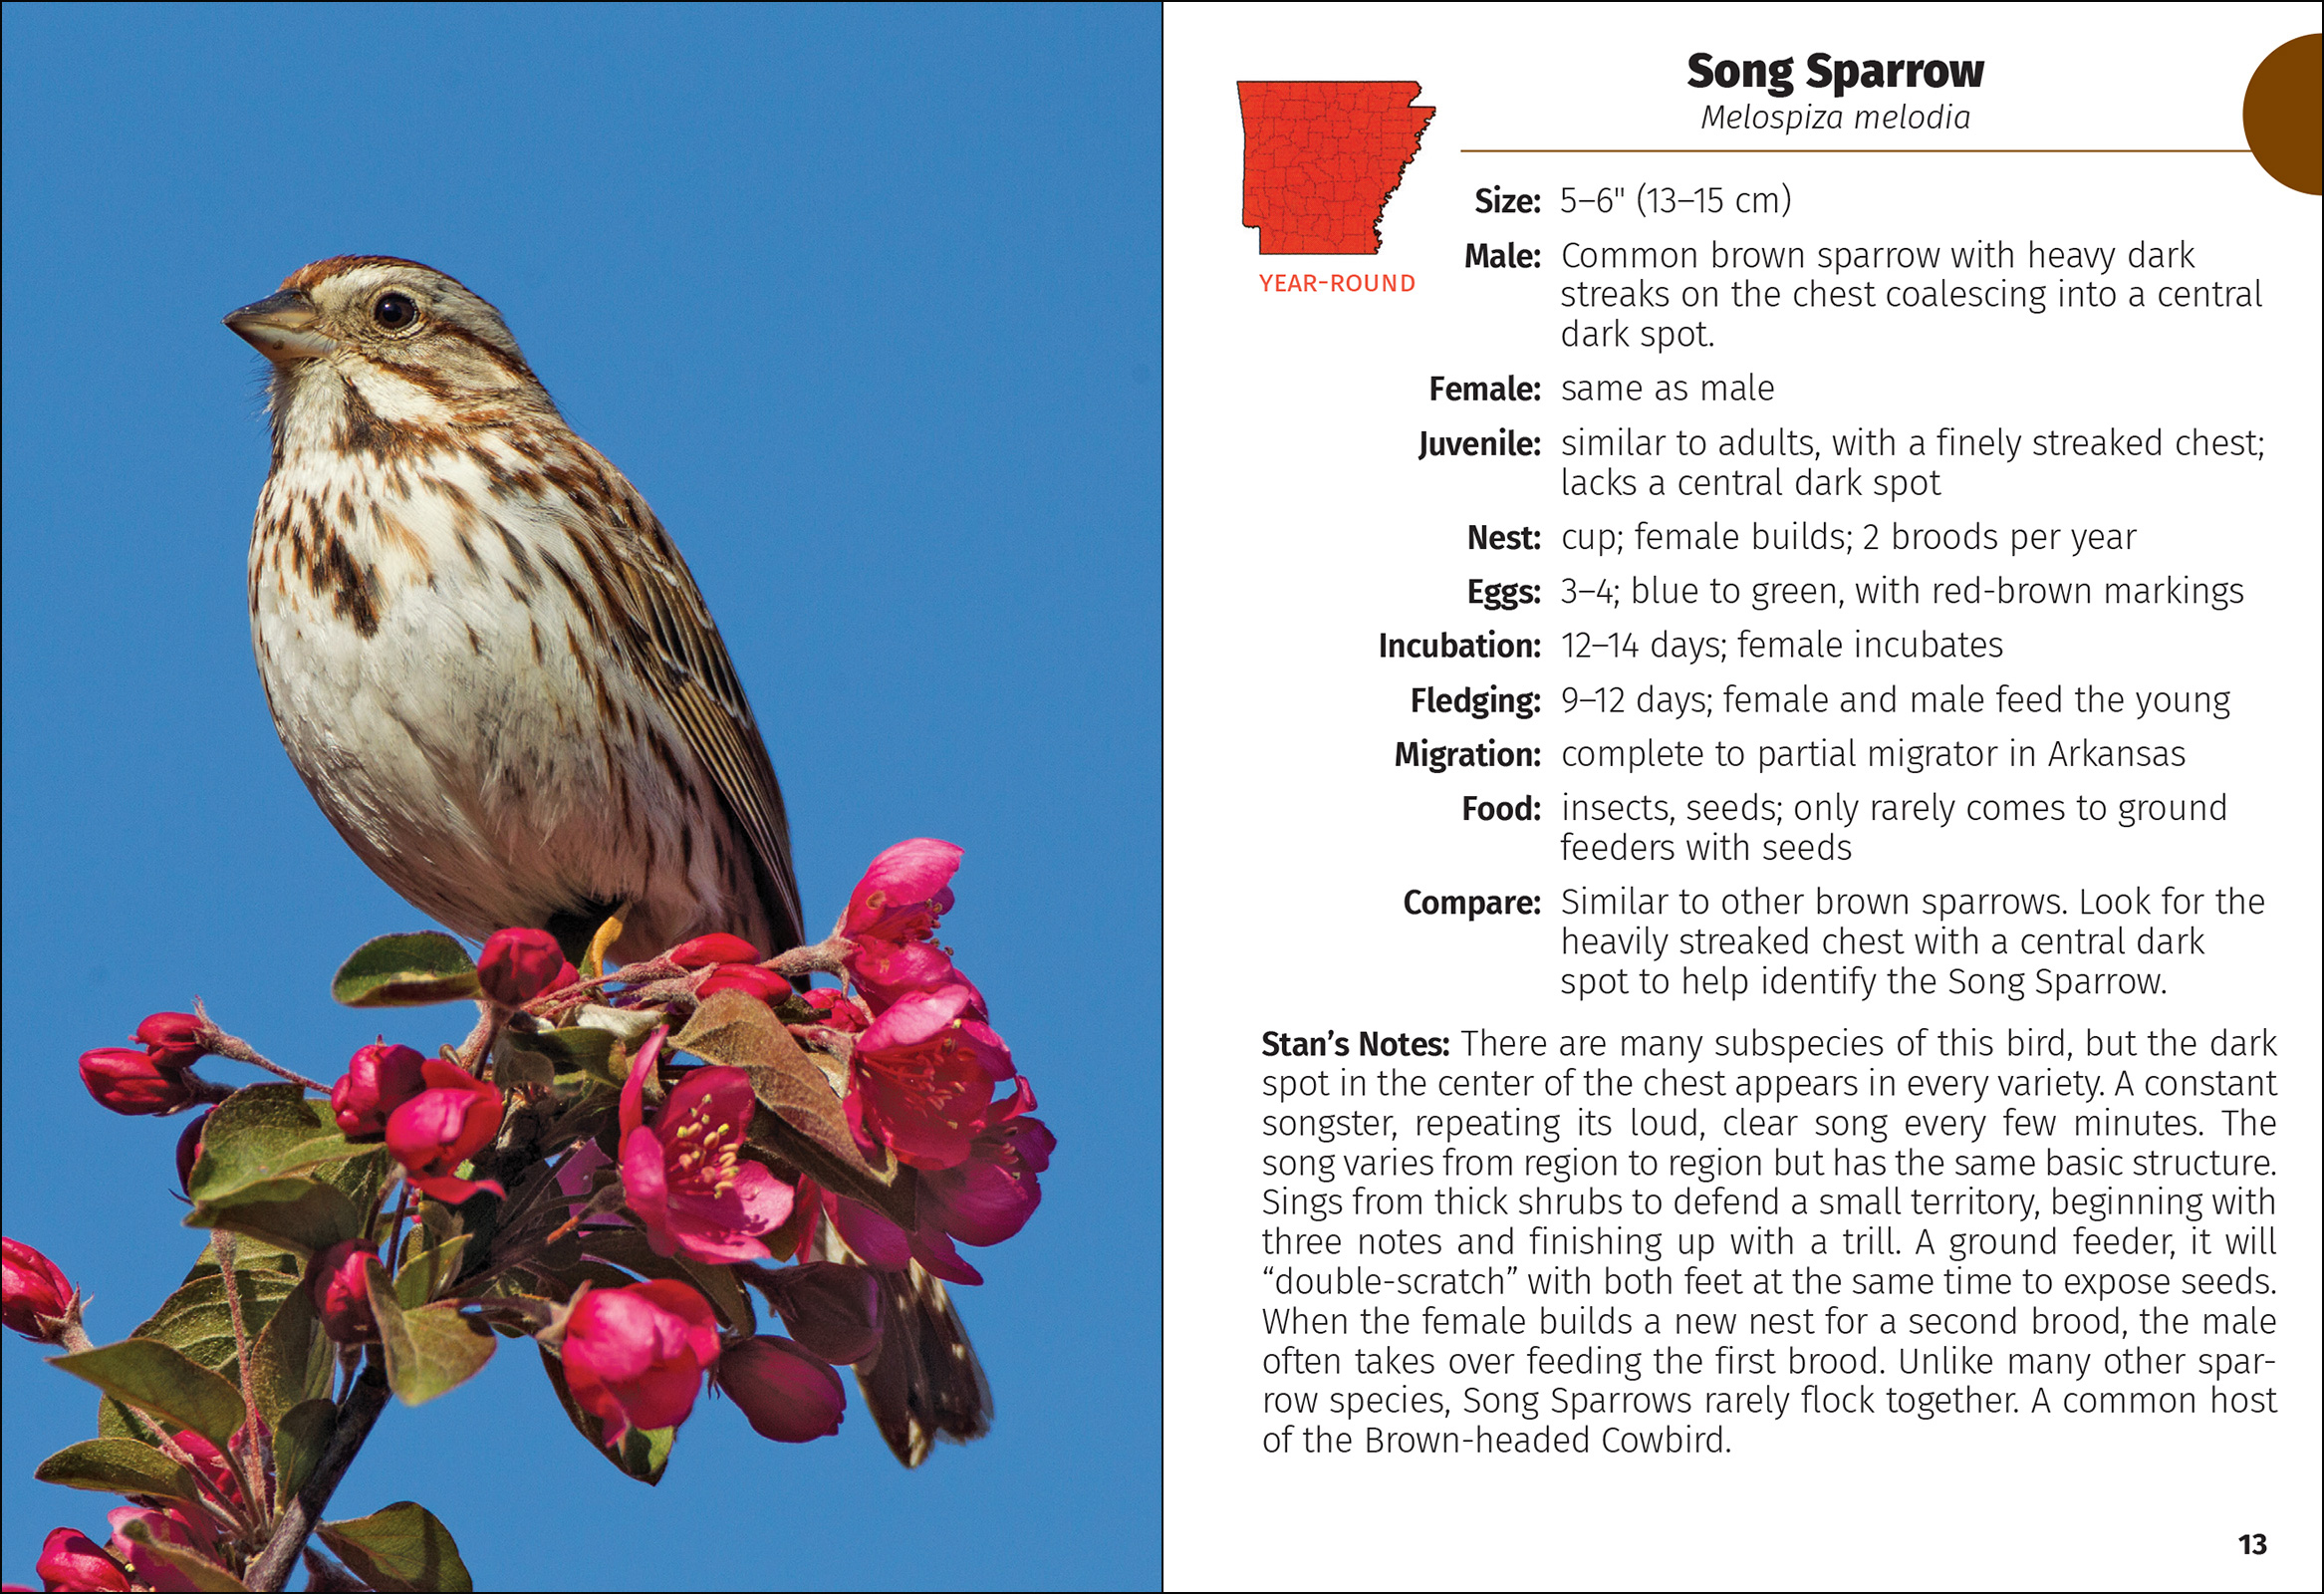 Birds of Arkansas Field Guide